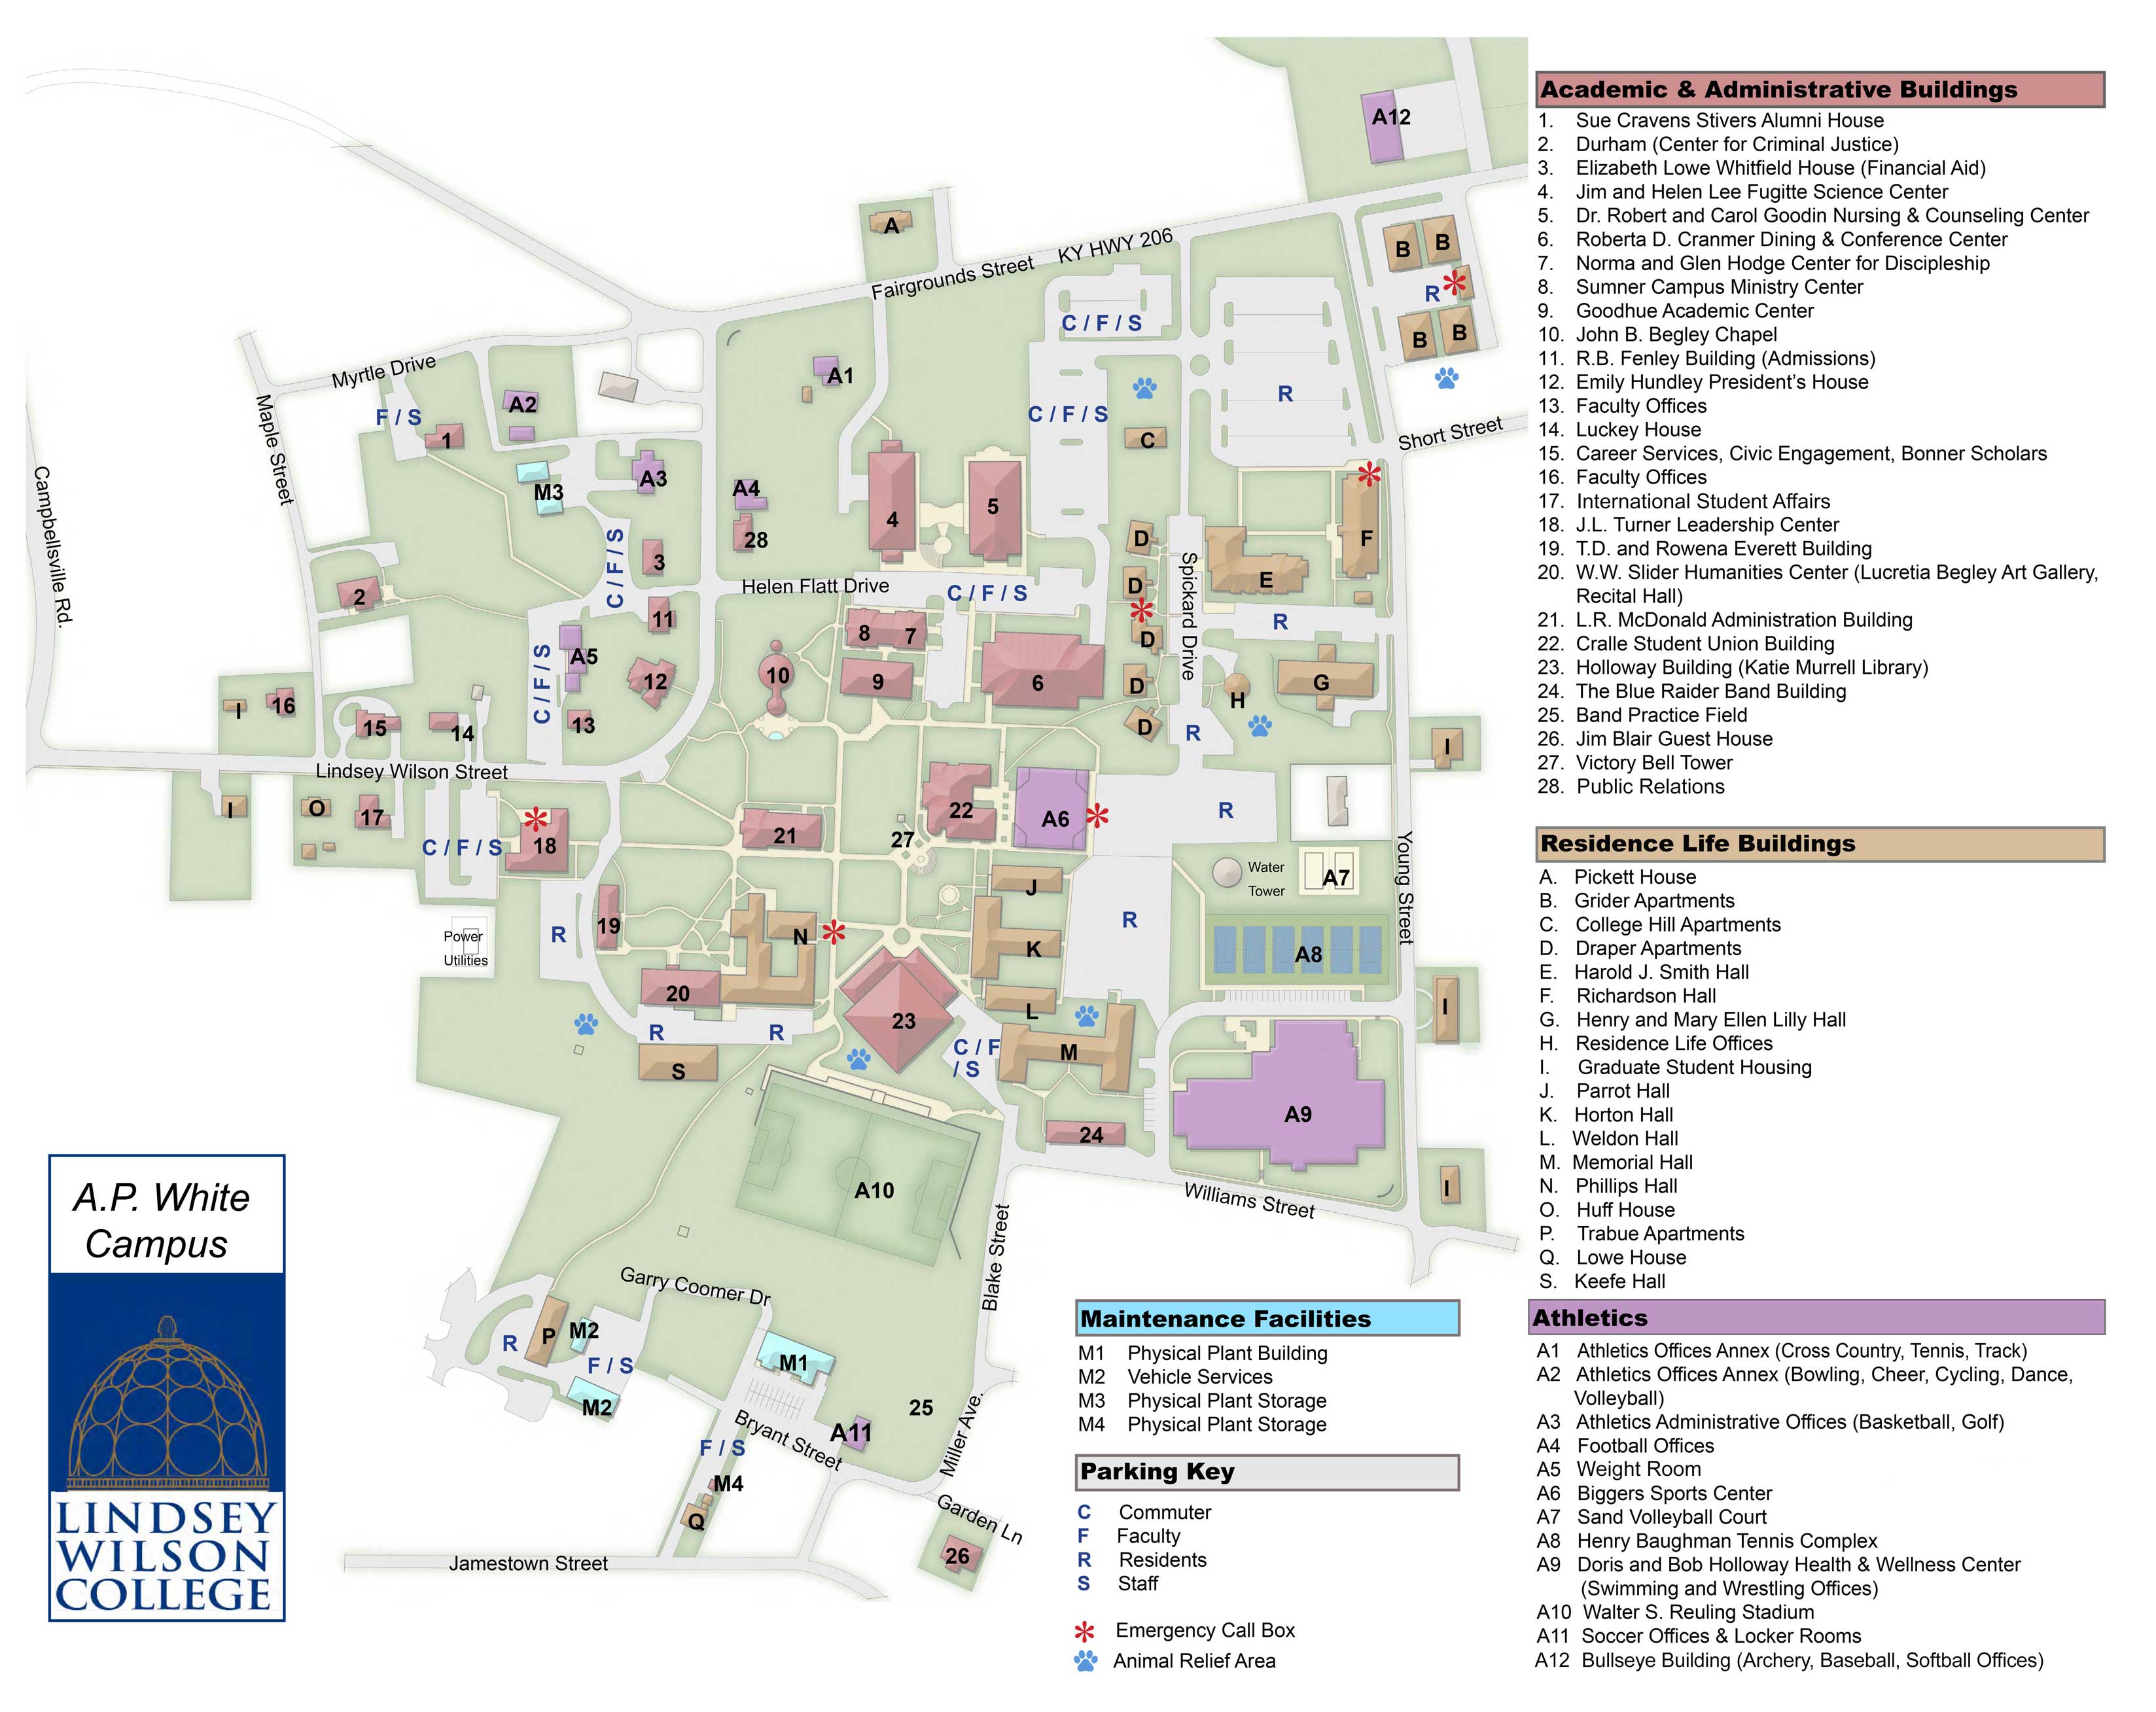 APSU Campus Map